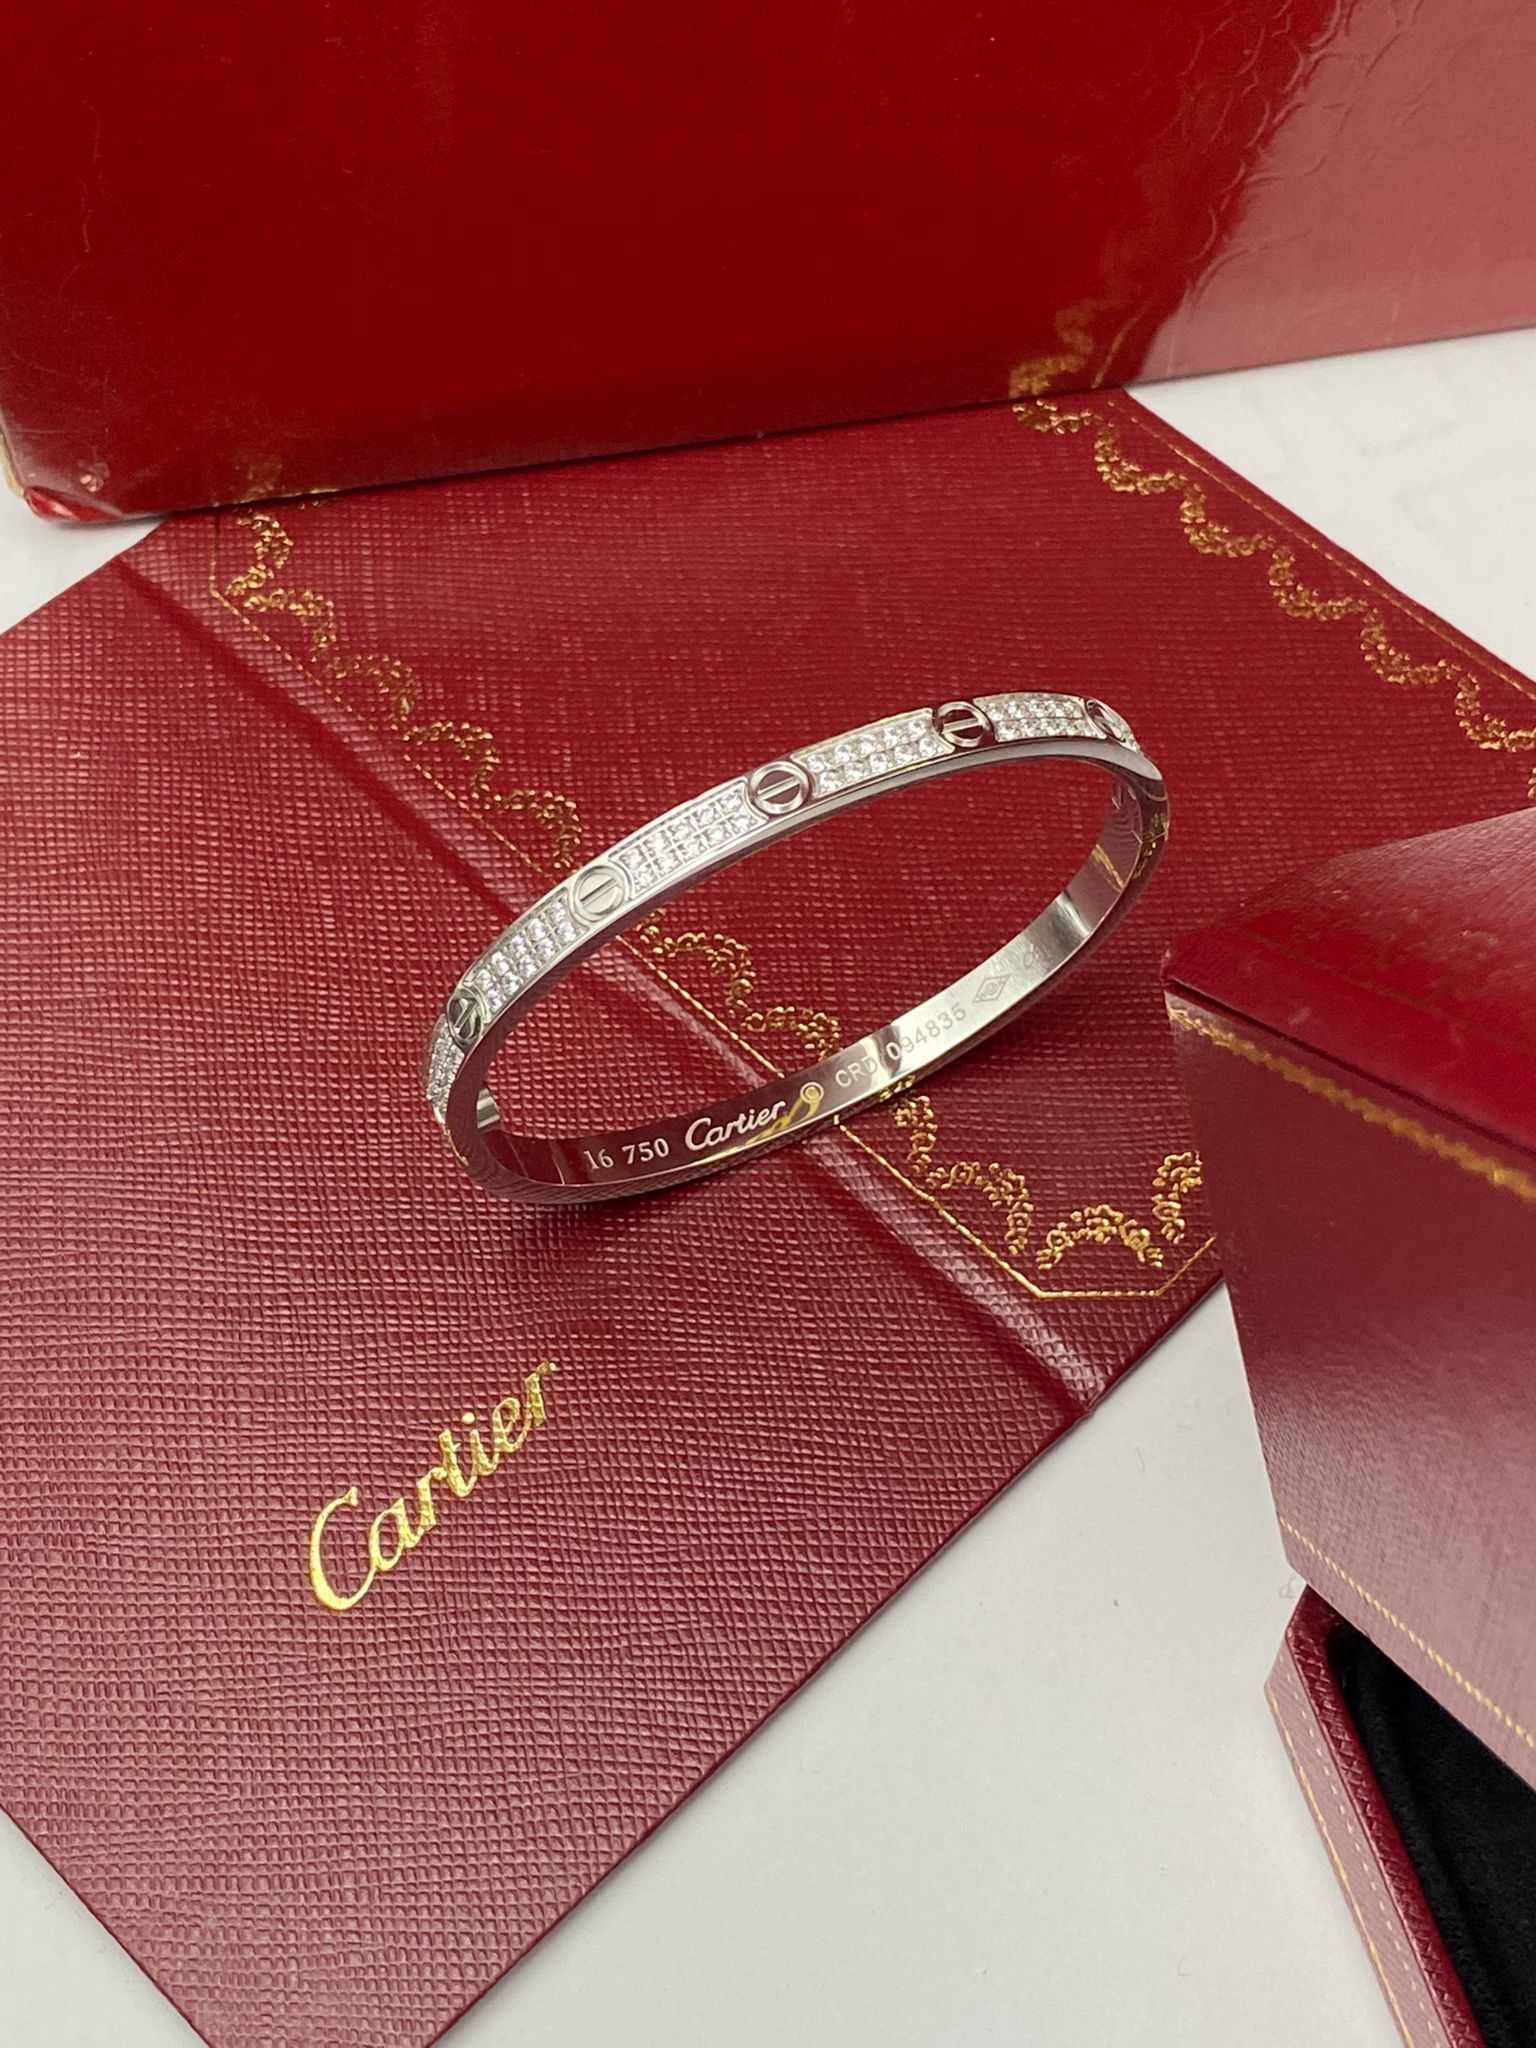 Brățară Cartier LOVE 16 White Gold 750 cu diamante